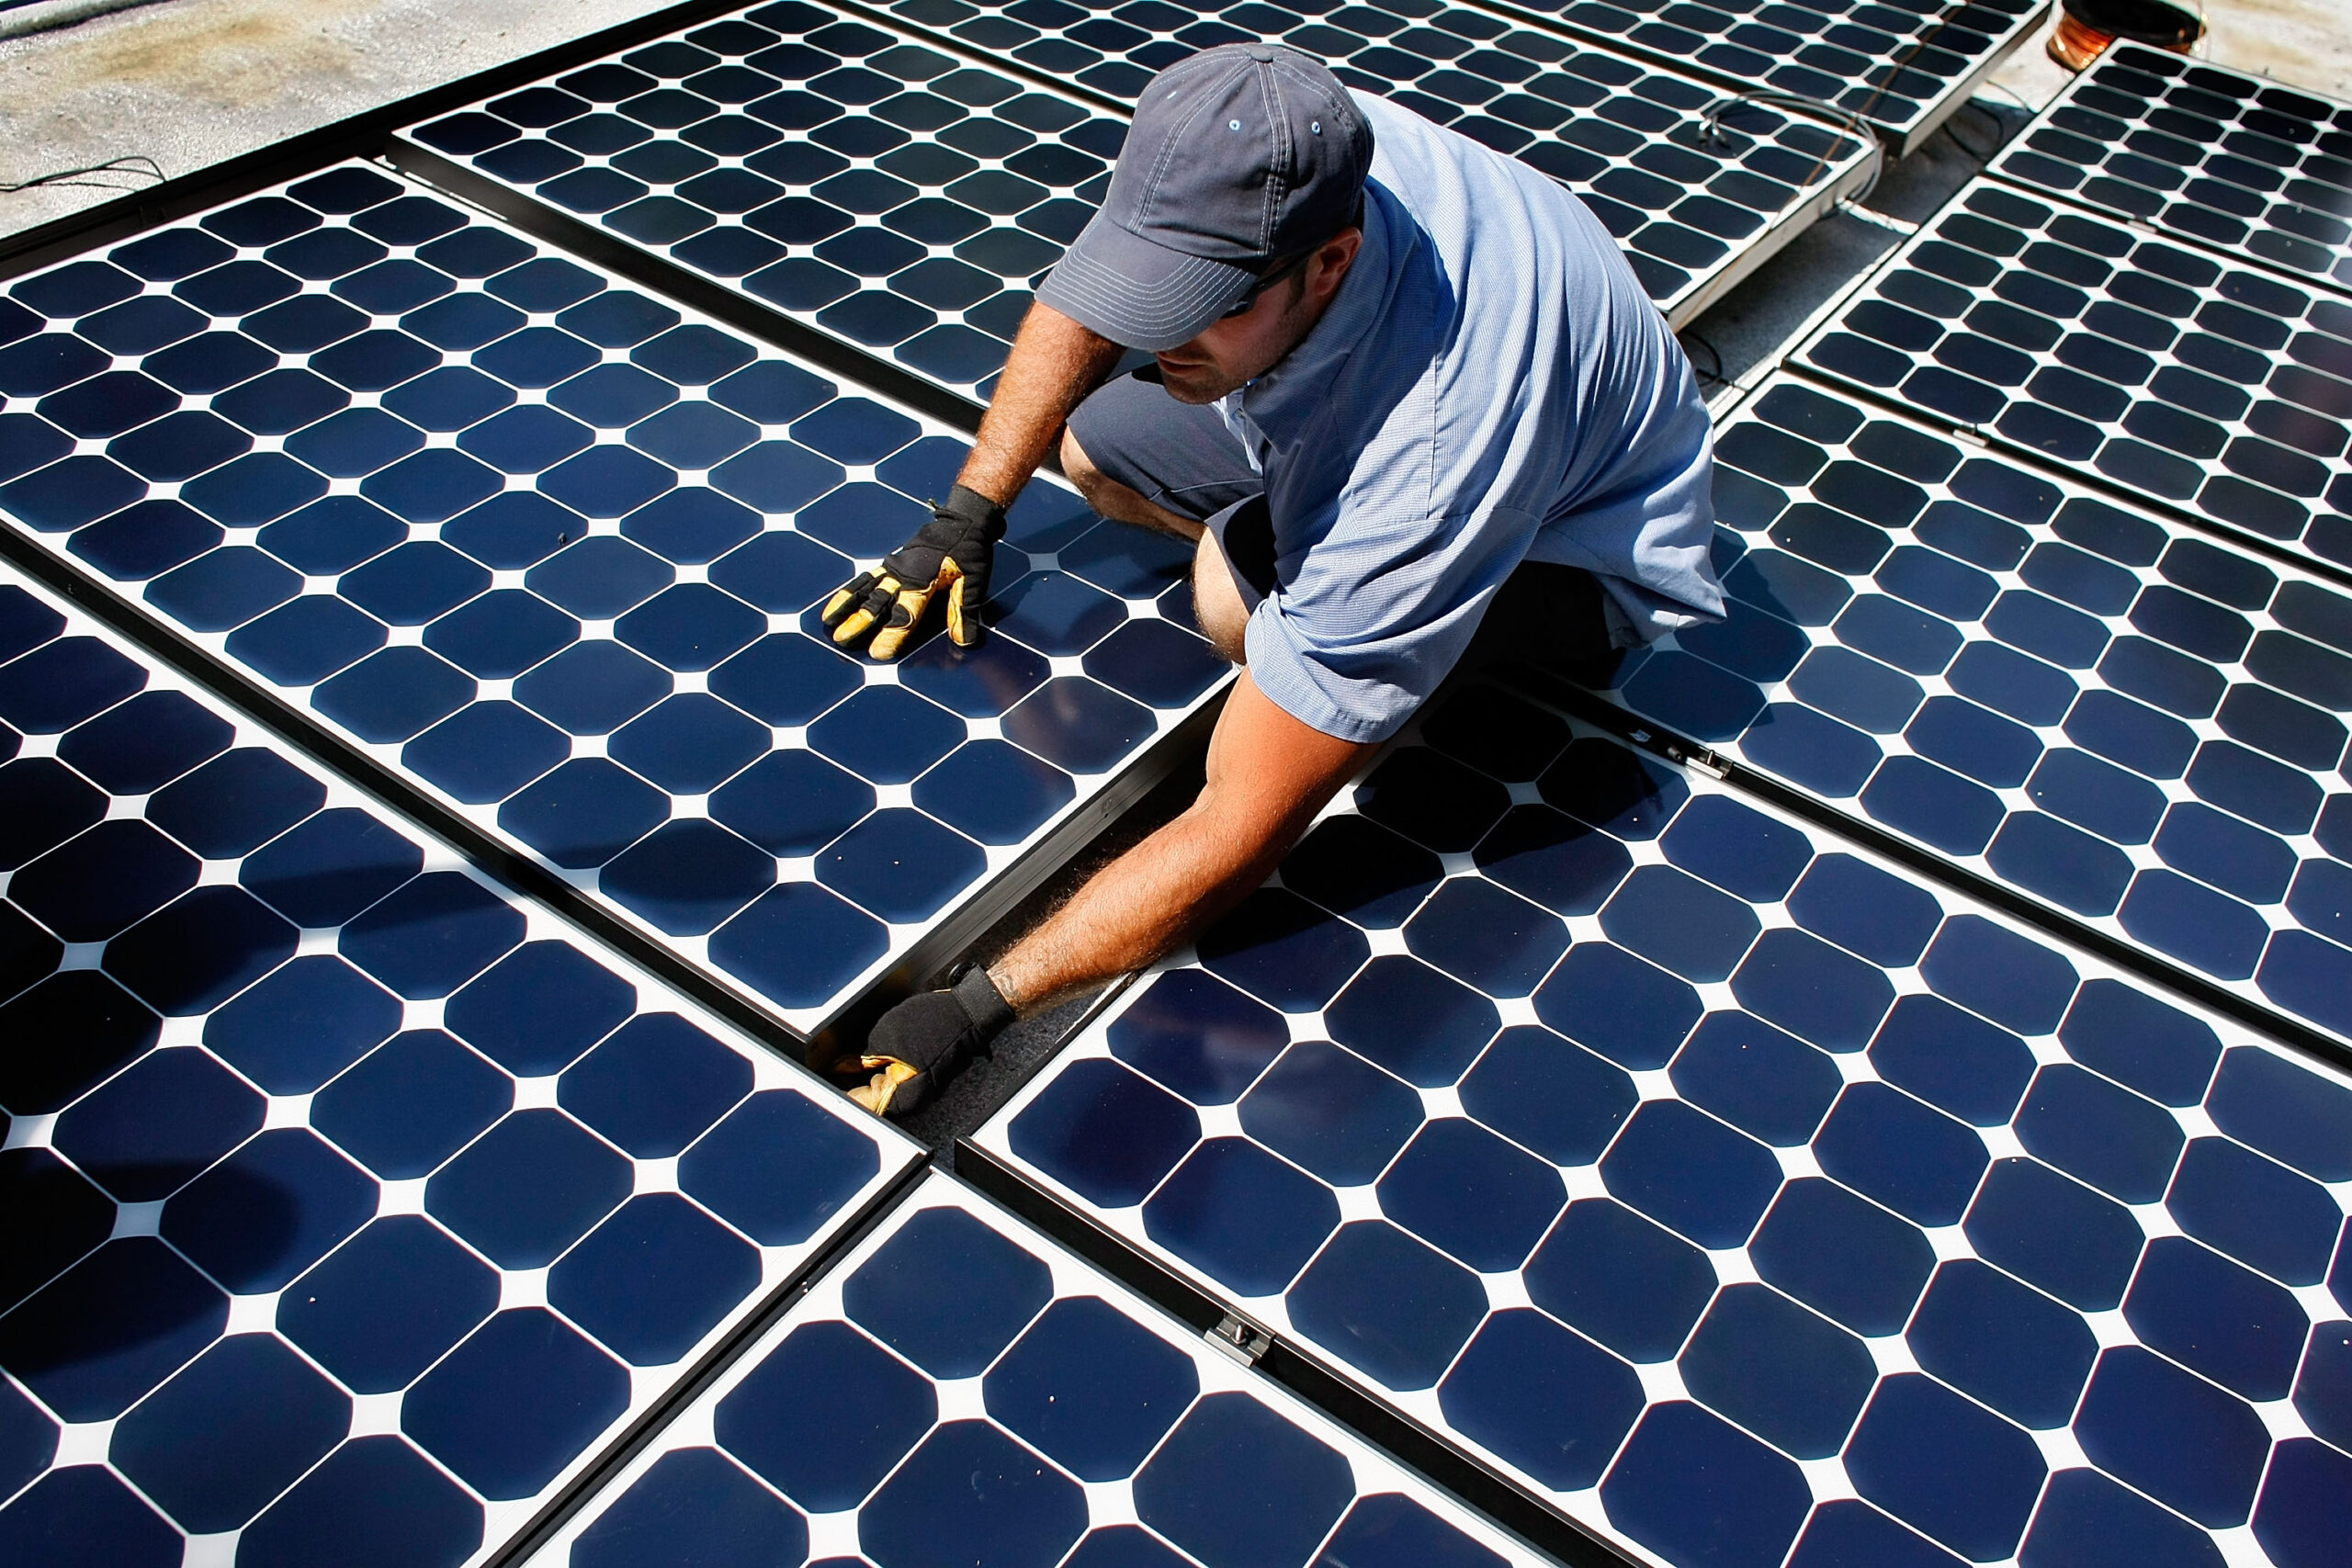 House votes to rescind Biden’s solar tariff moratorium